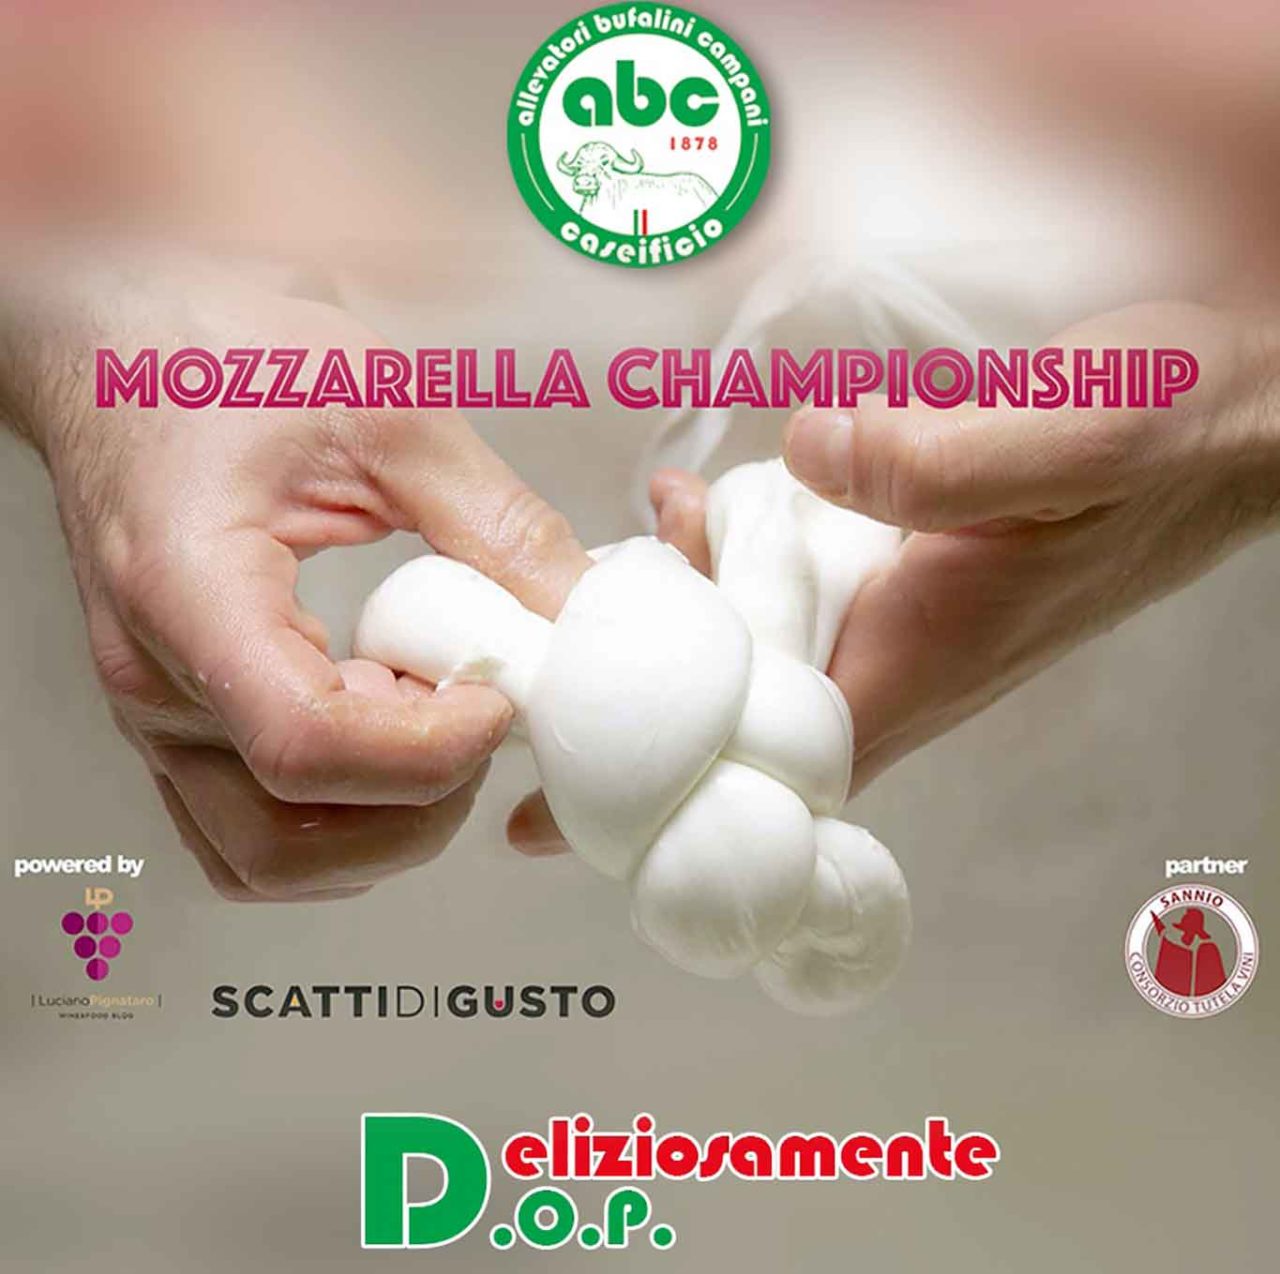 mozzarella championship